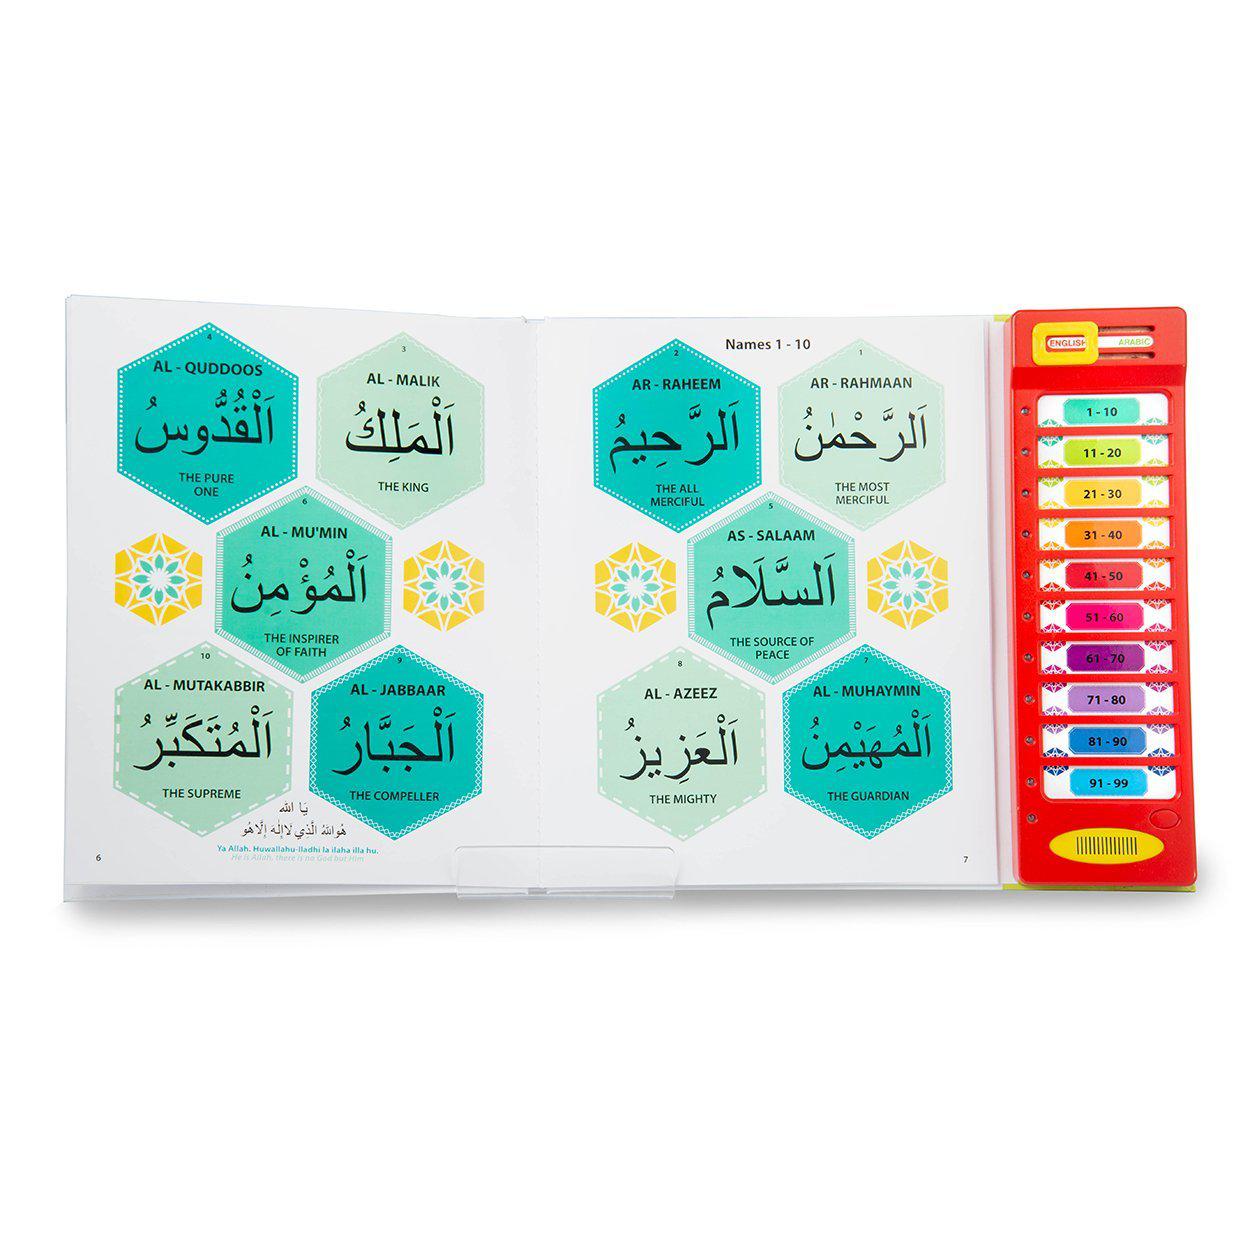 99 Names Of Allah Sound Book - Quran Co™